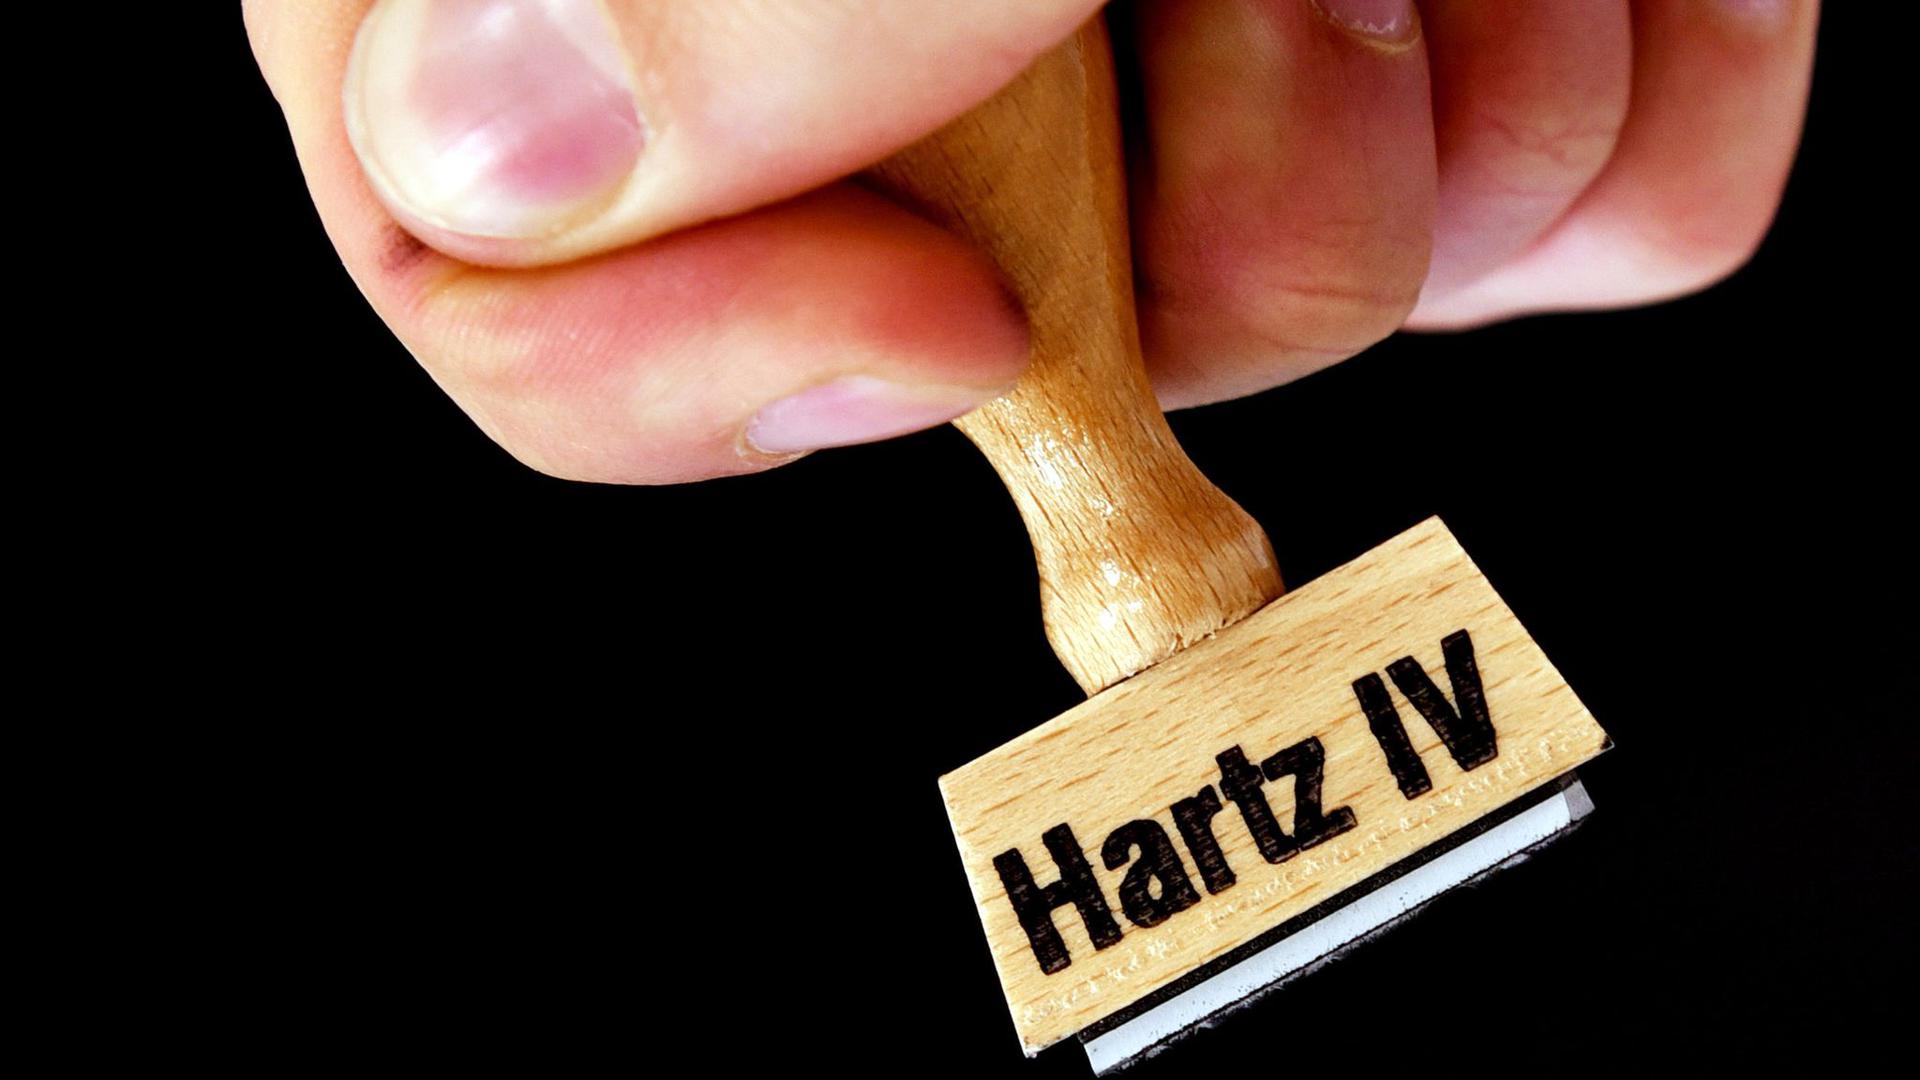 Arbeitsminister Hubertus Heil will die Hartz-IV-Regeln entschärfen und dauerhaft leichteren Zugang schaffen.